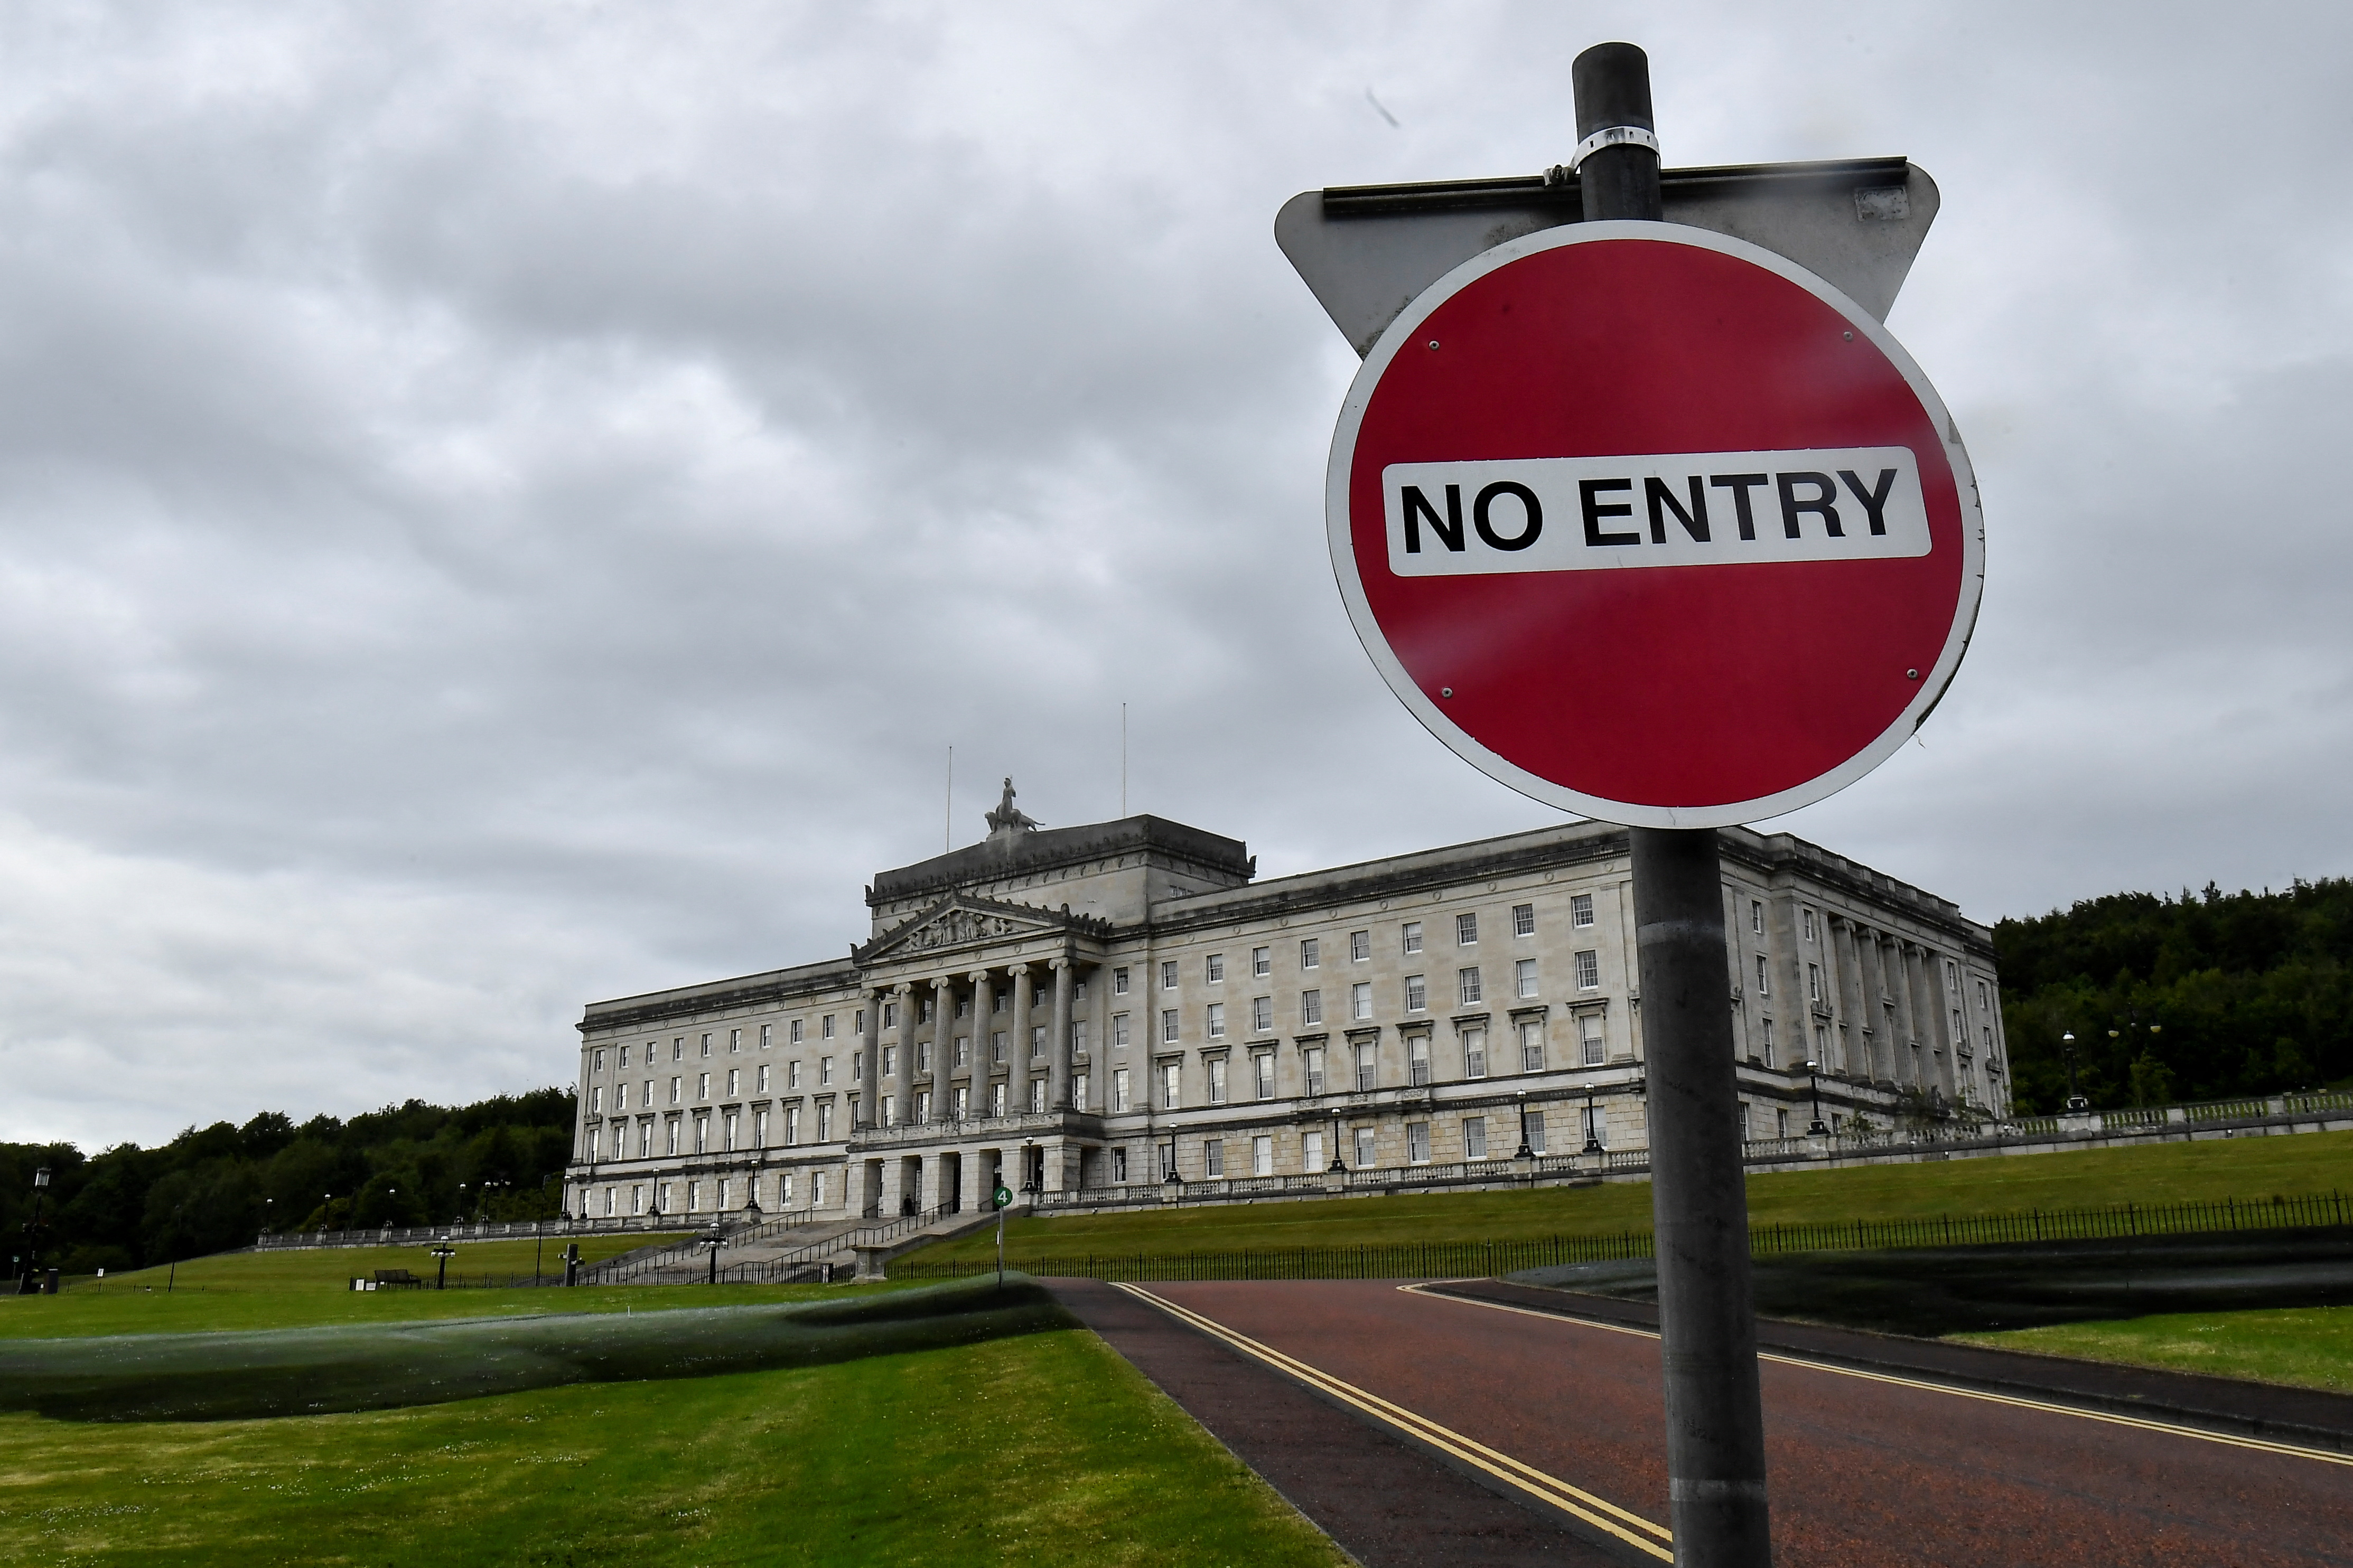 Se espera que el proyecto de ley para anular ese arreglo enfrente oposición en el Parlamento (REUTERS/Clodagh Kilcoyne)